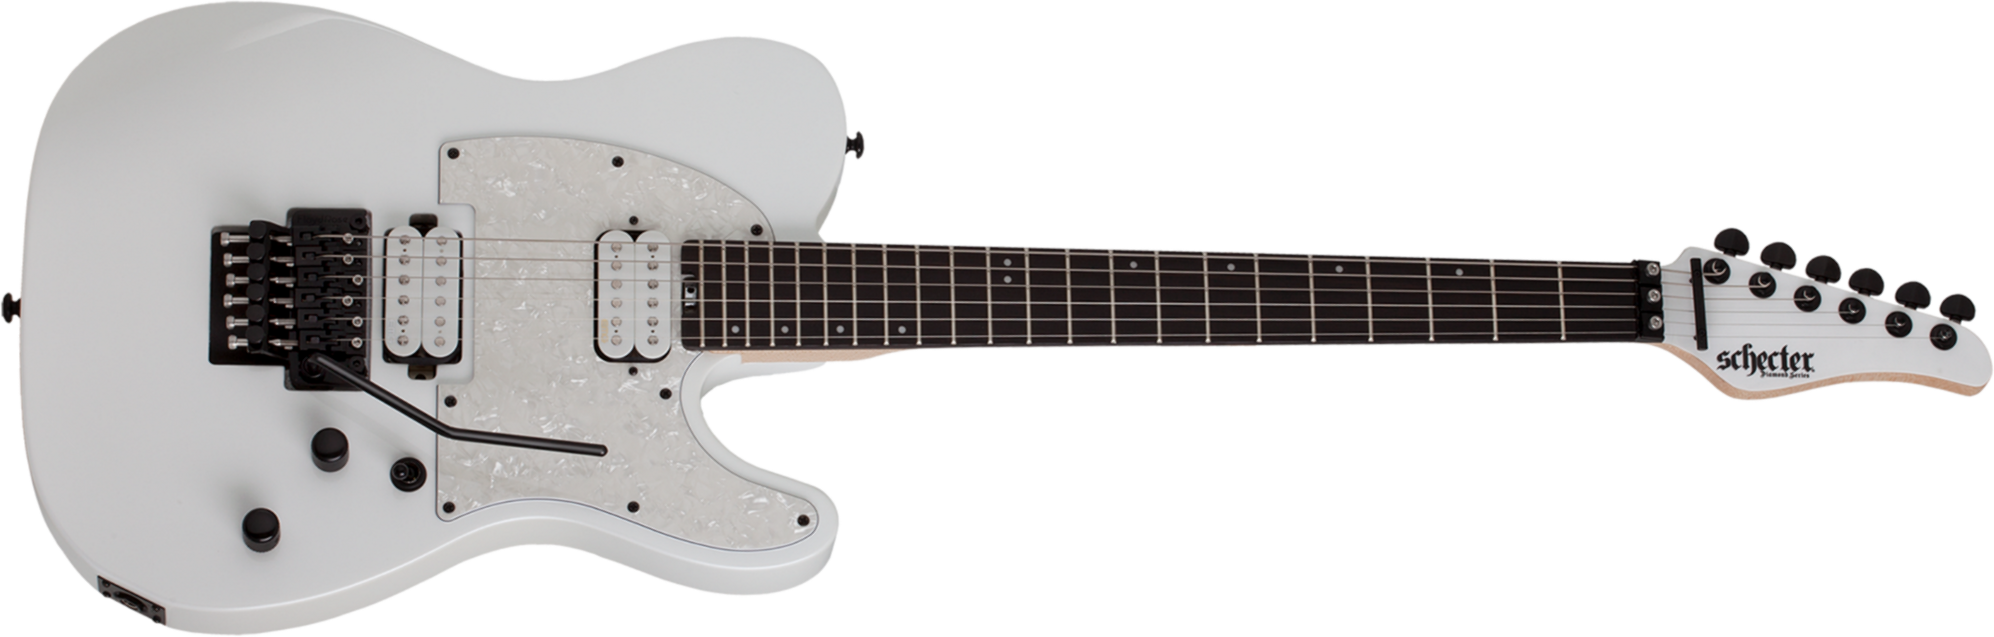 Schecter Sun Valley Super Shredder Pt Fr 2h Emg Rw - Metallic White - Televorm elektrische gitaar - Main picture